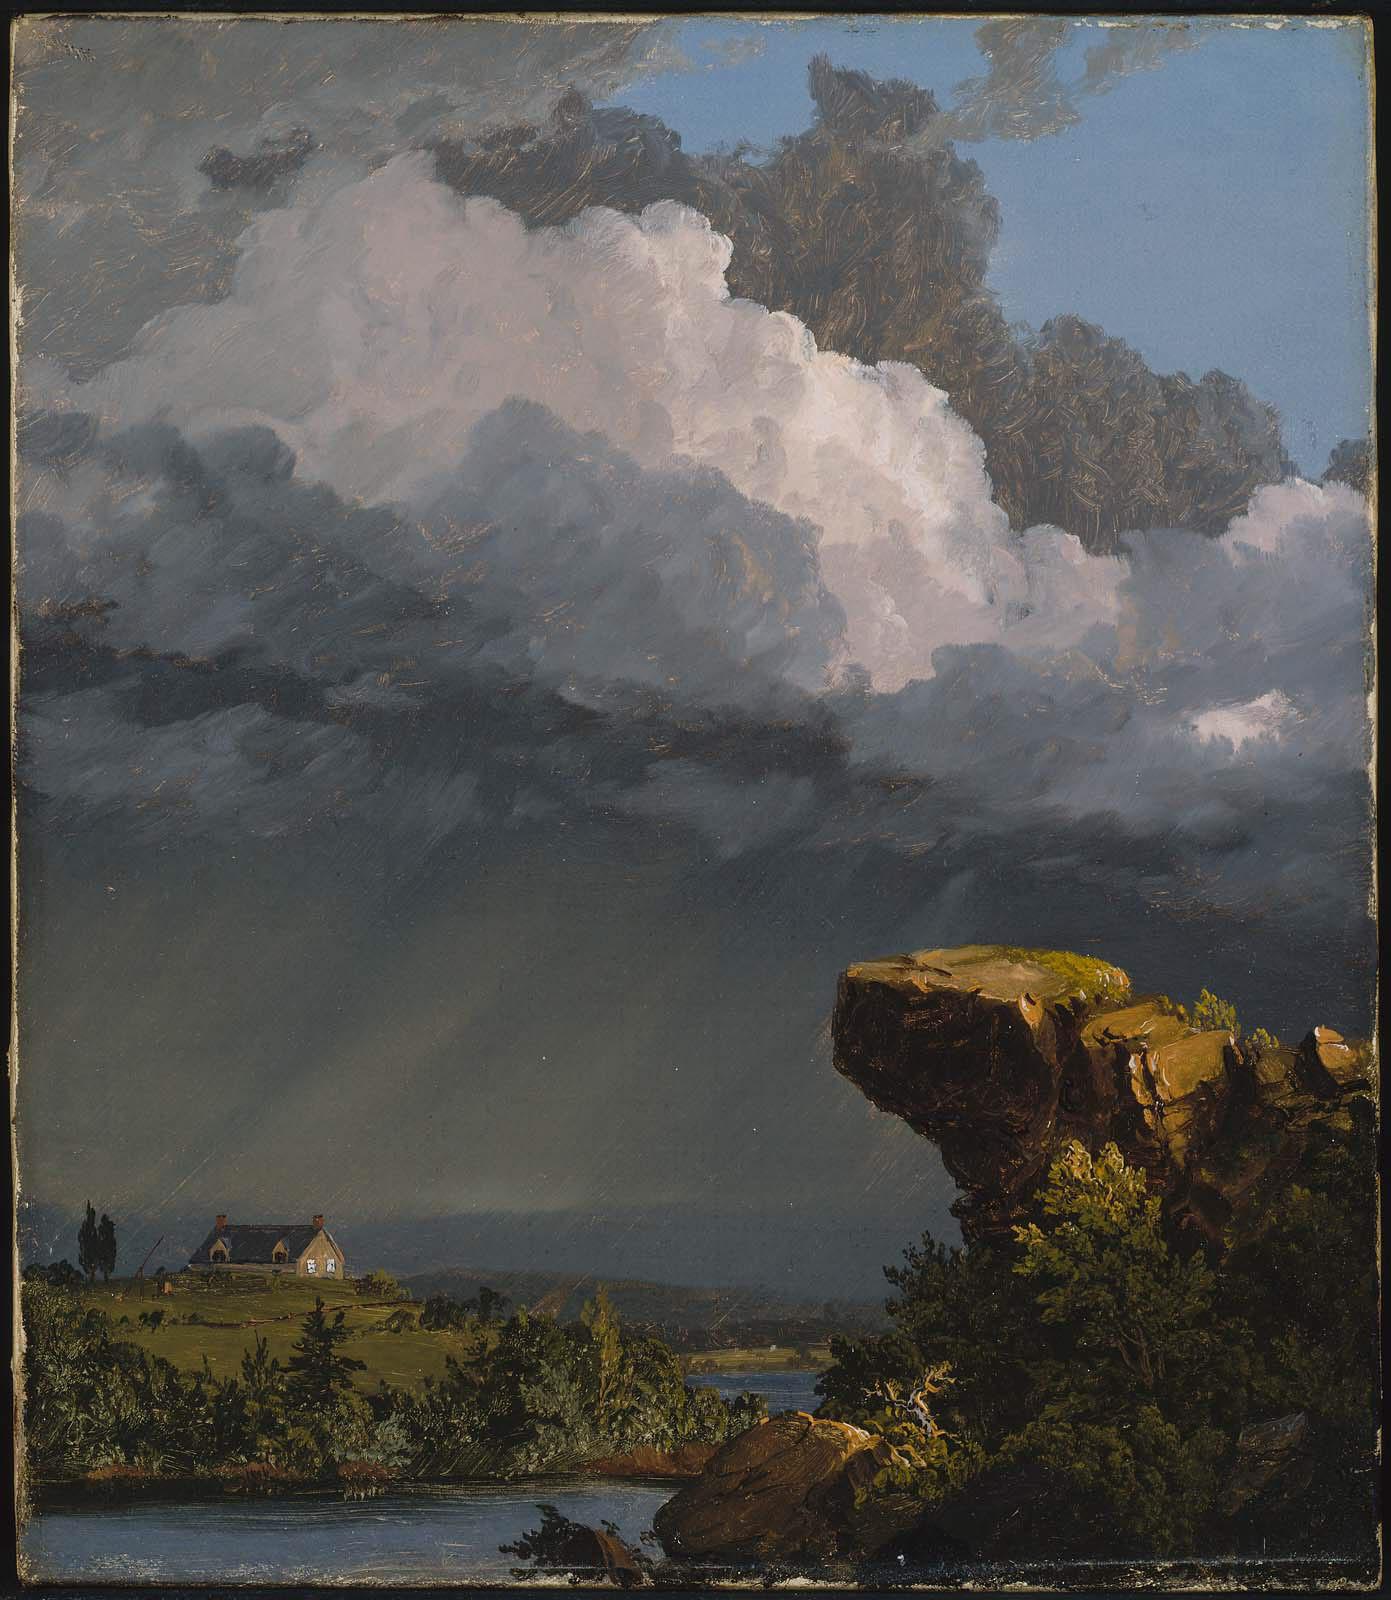 O furtună trecătoare by Frederic Edwin Church - 1849 - 35.88 x 30.48 cm 